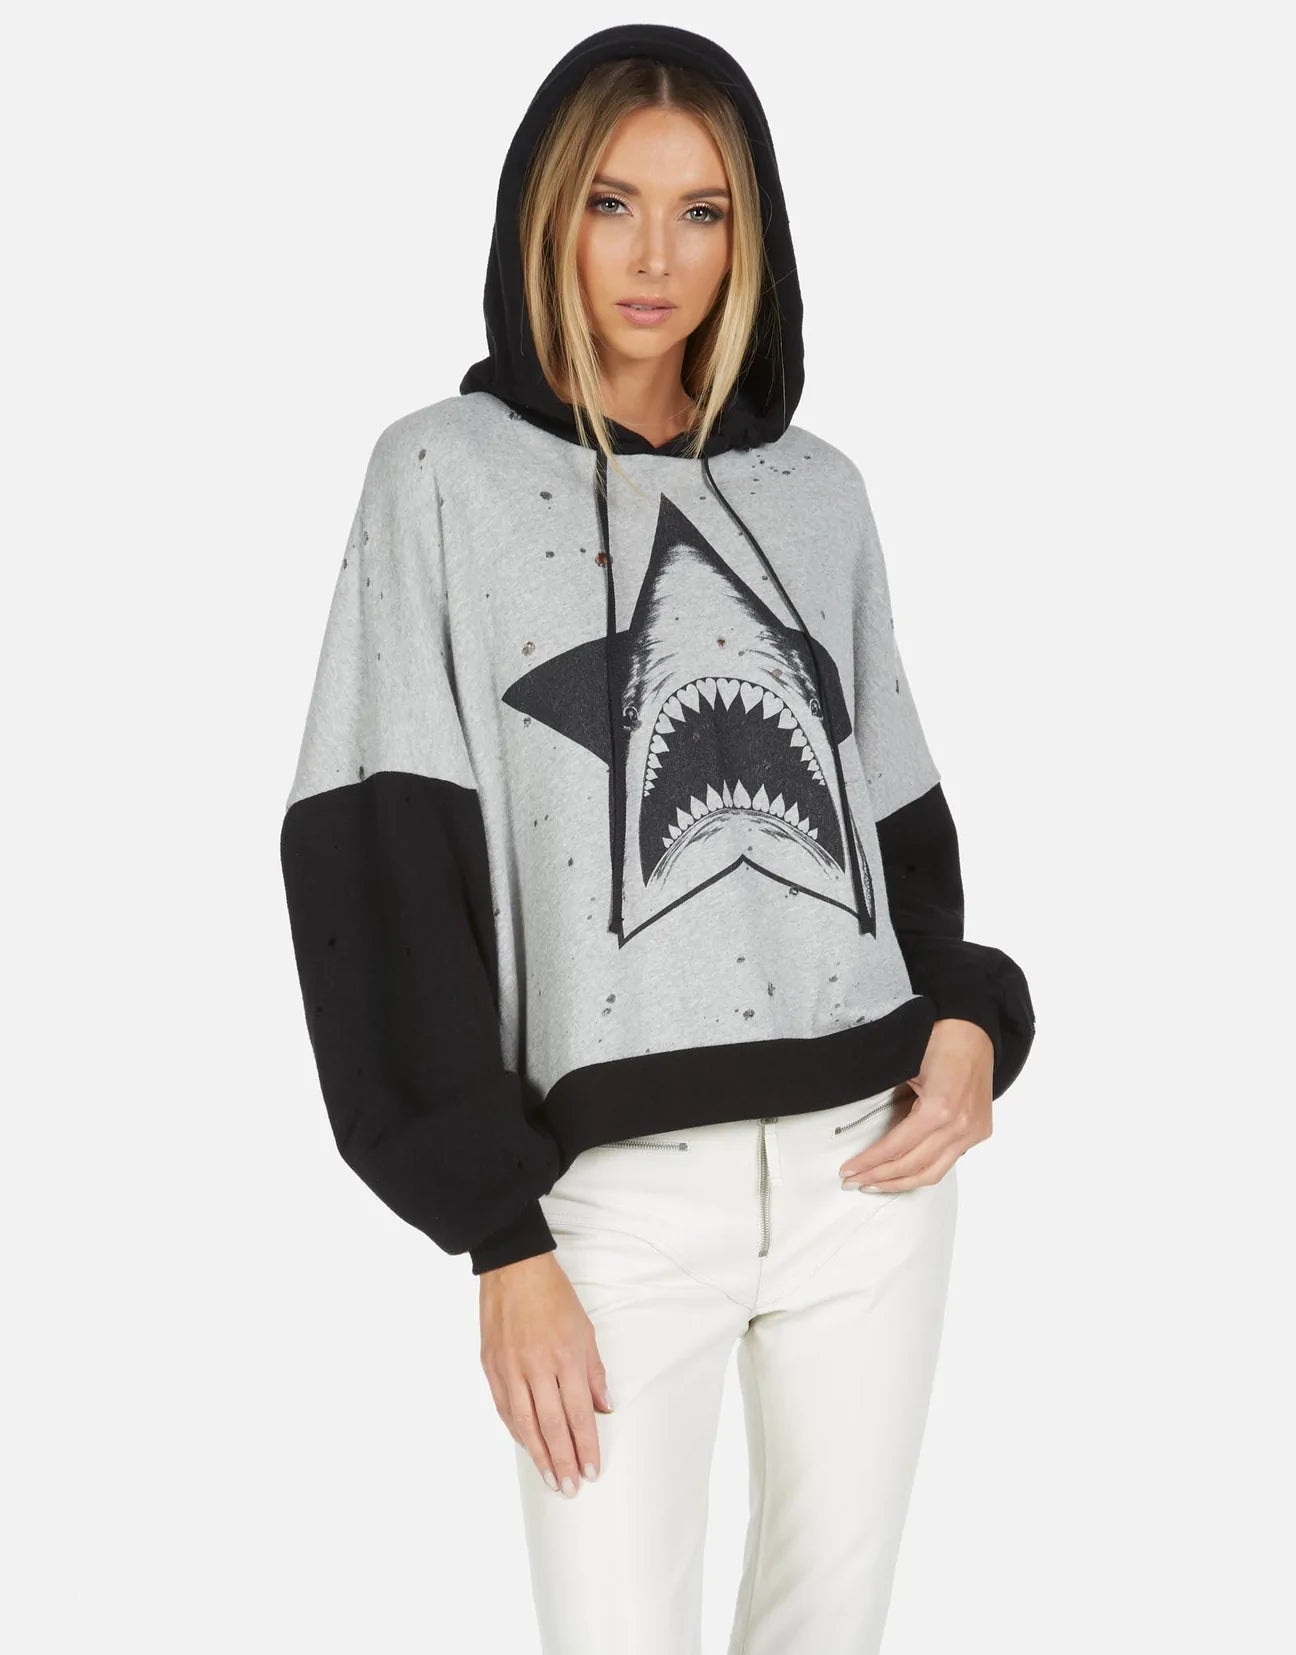 Shop Lauren Moshi Ellie Star Shark Hooded Sweater - Premium Hoodie from Lauren Moshi Online now at Spoiled Brat 